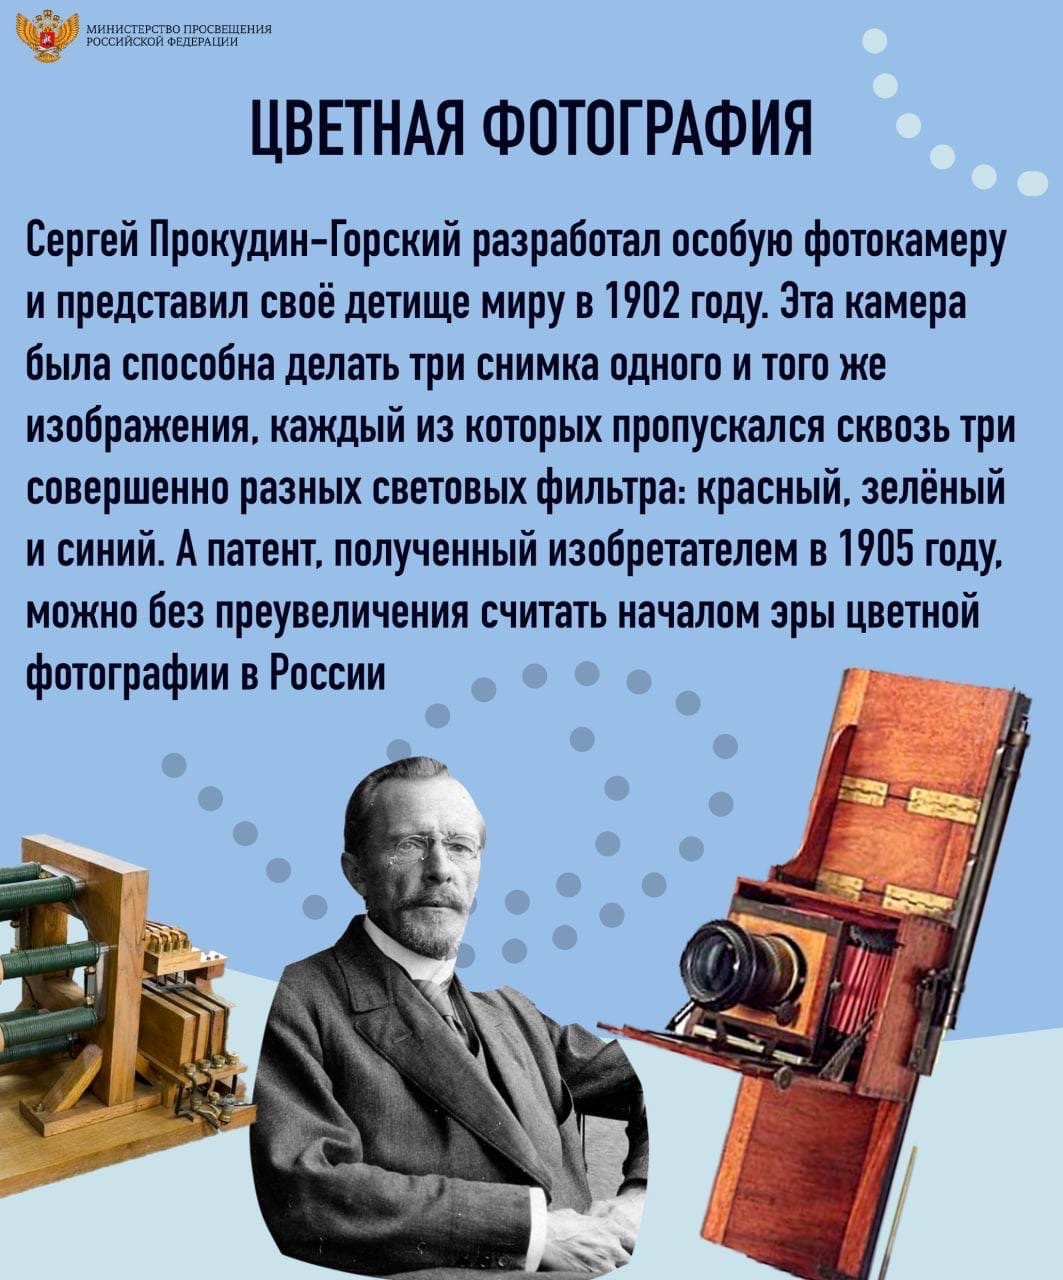 Изобретатели России